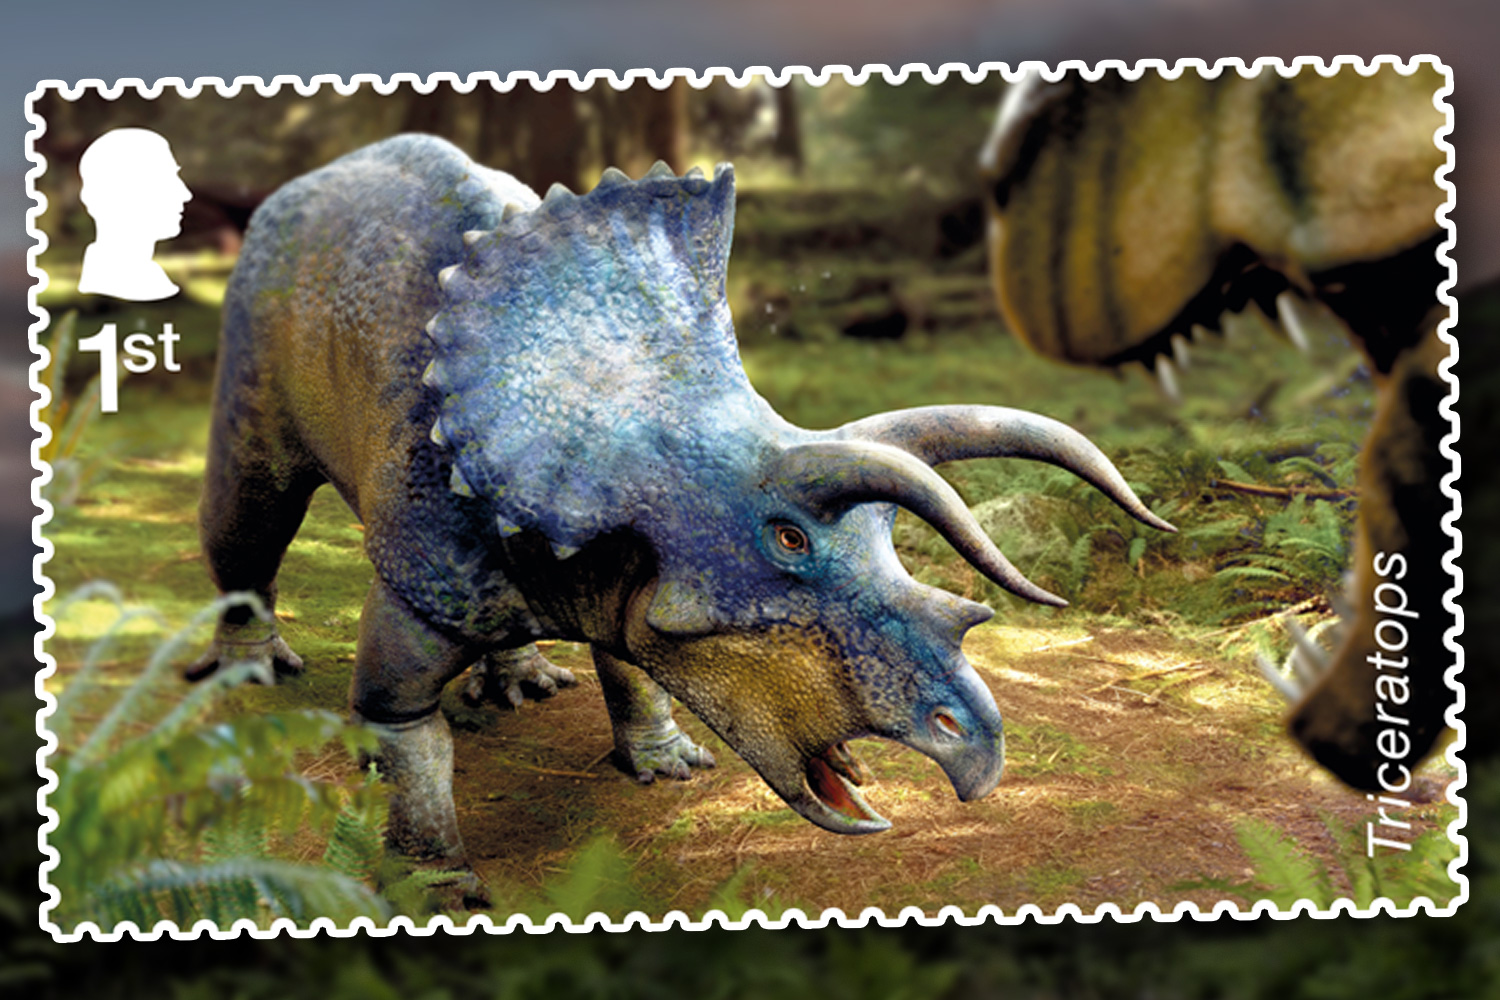 Auf einer der Briefmarken ist ein Triceratops abgebildet